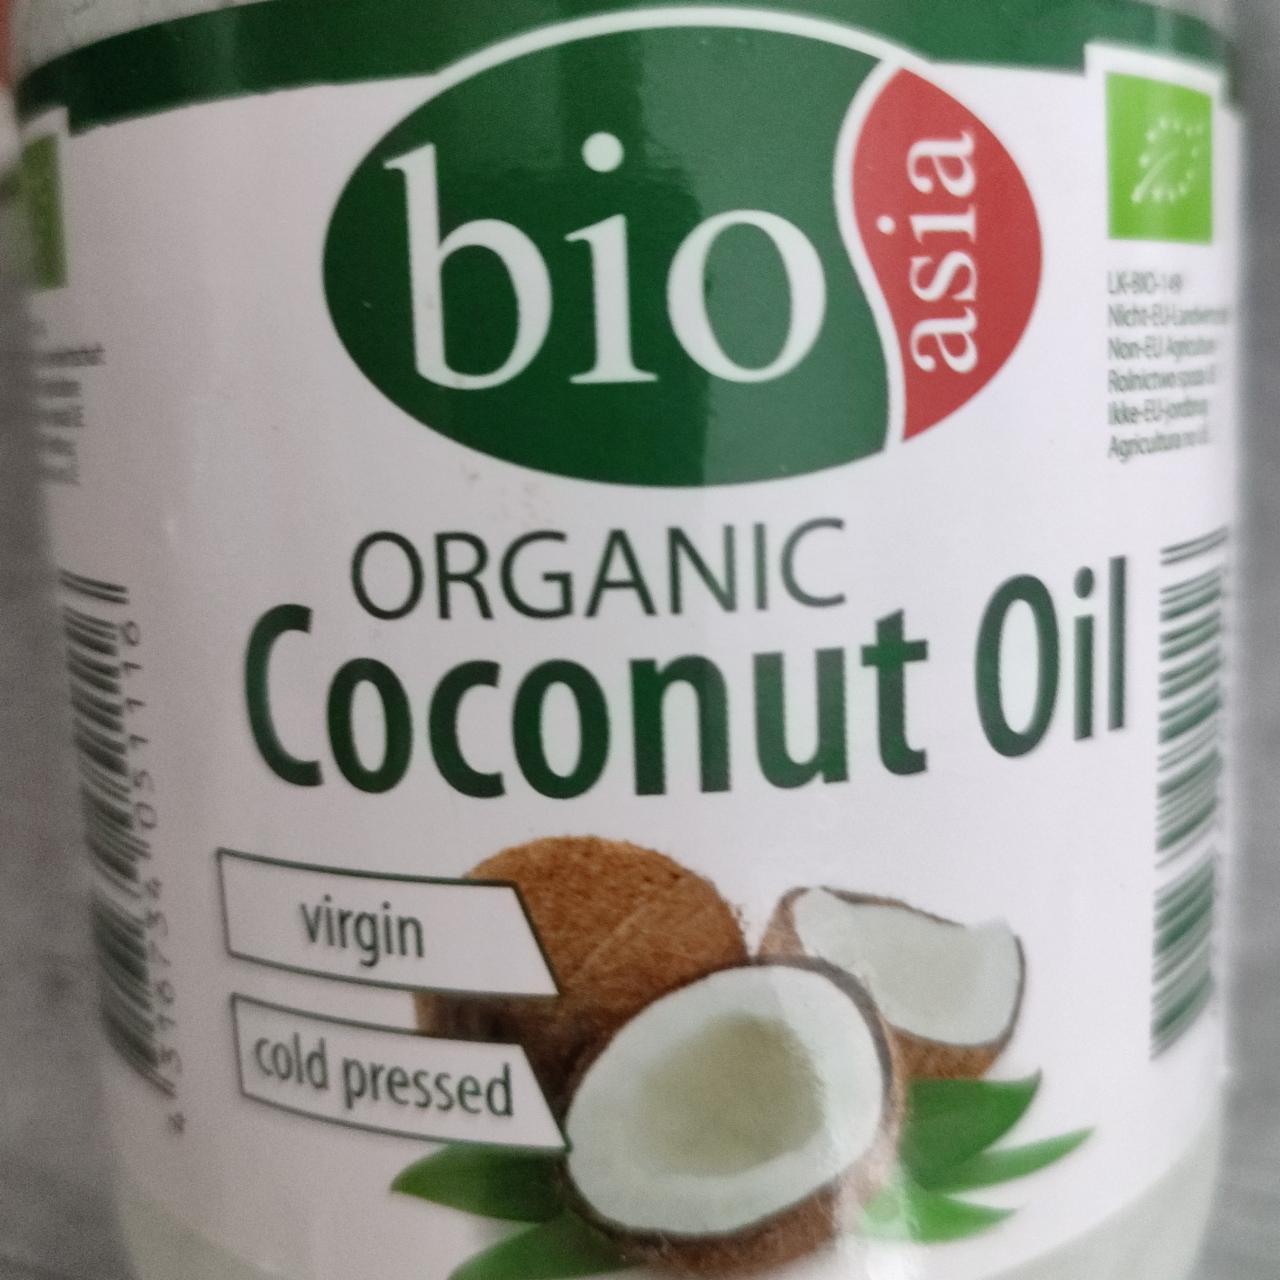 Fotografie - Organic Coconut Oil Bioasia